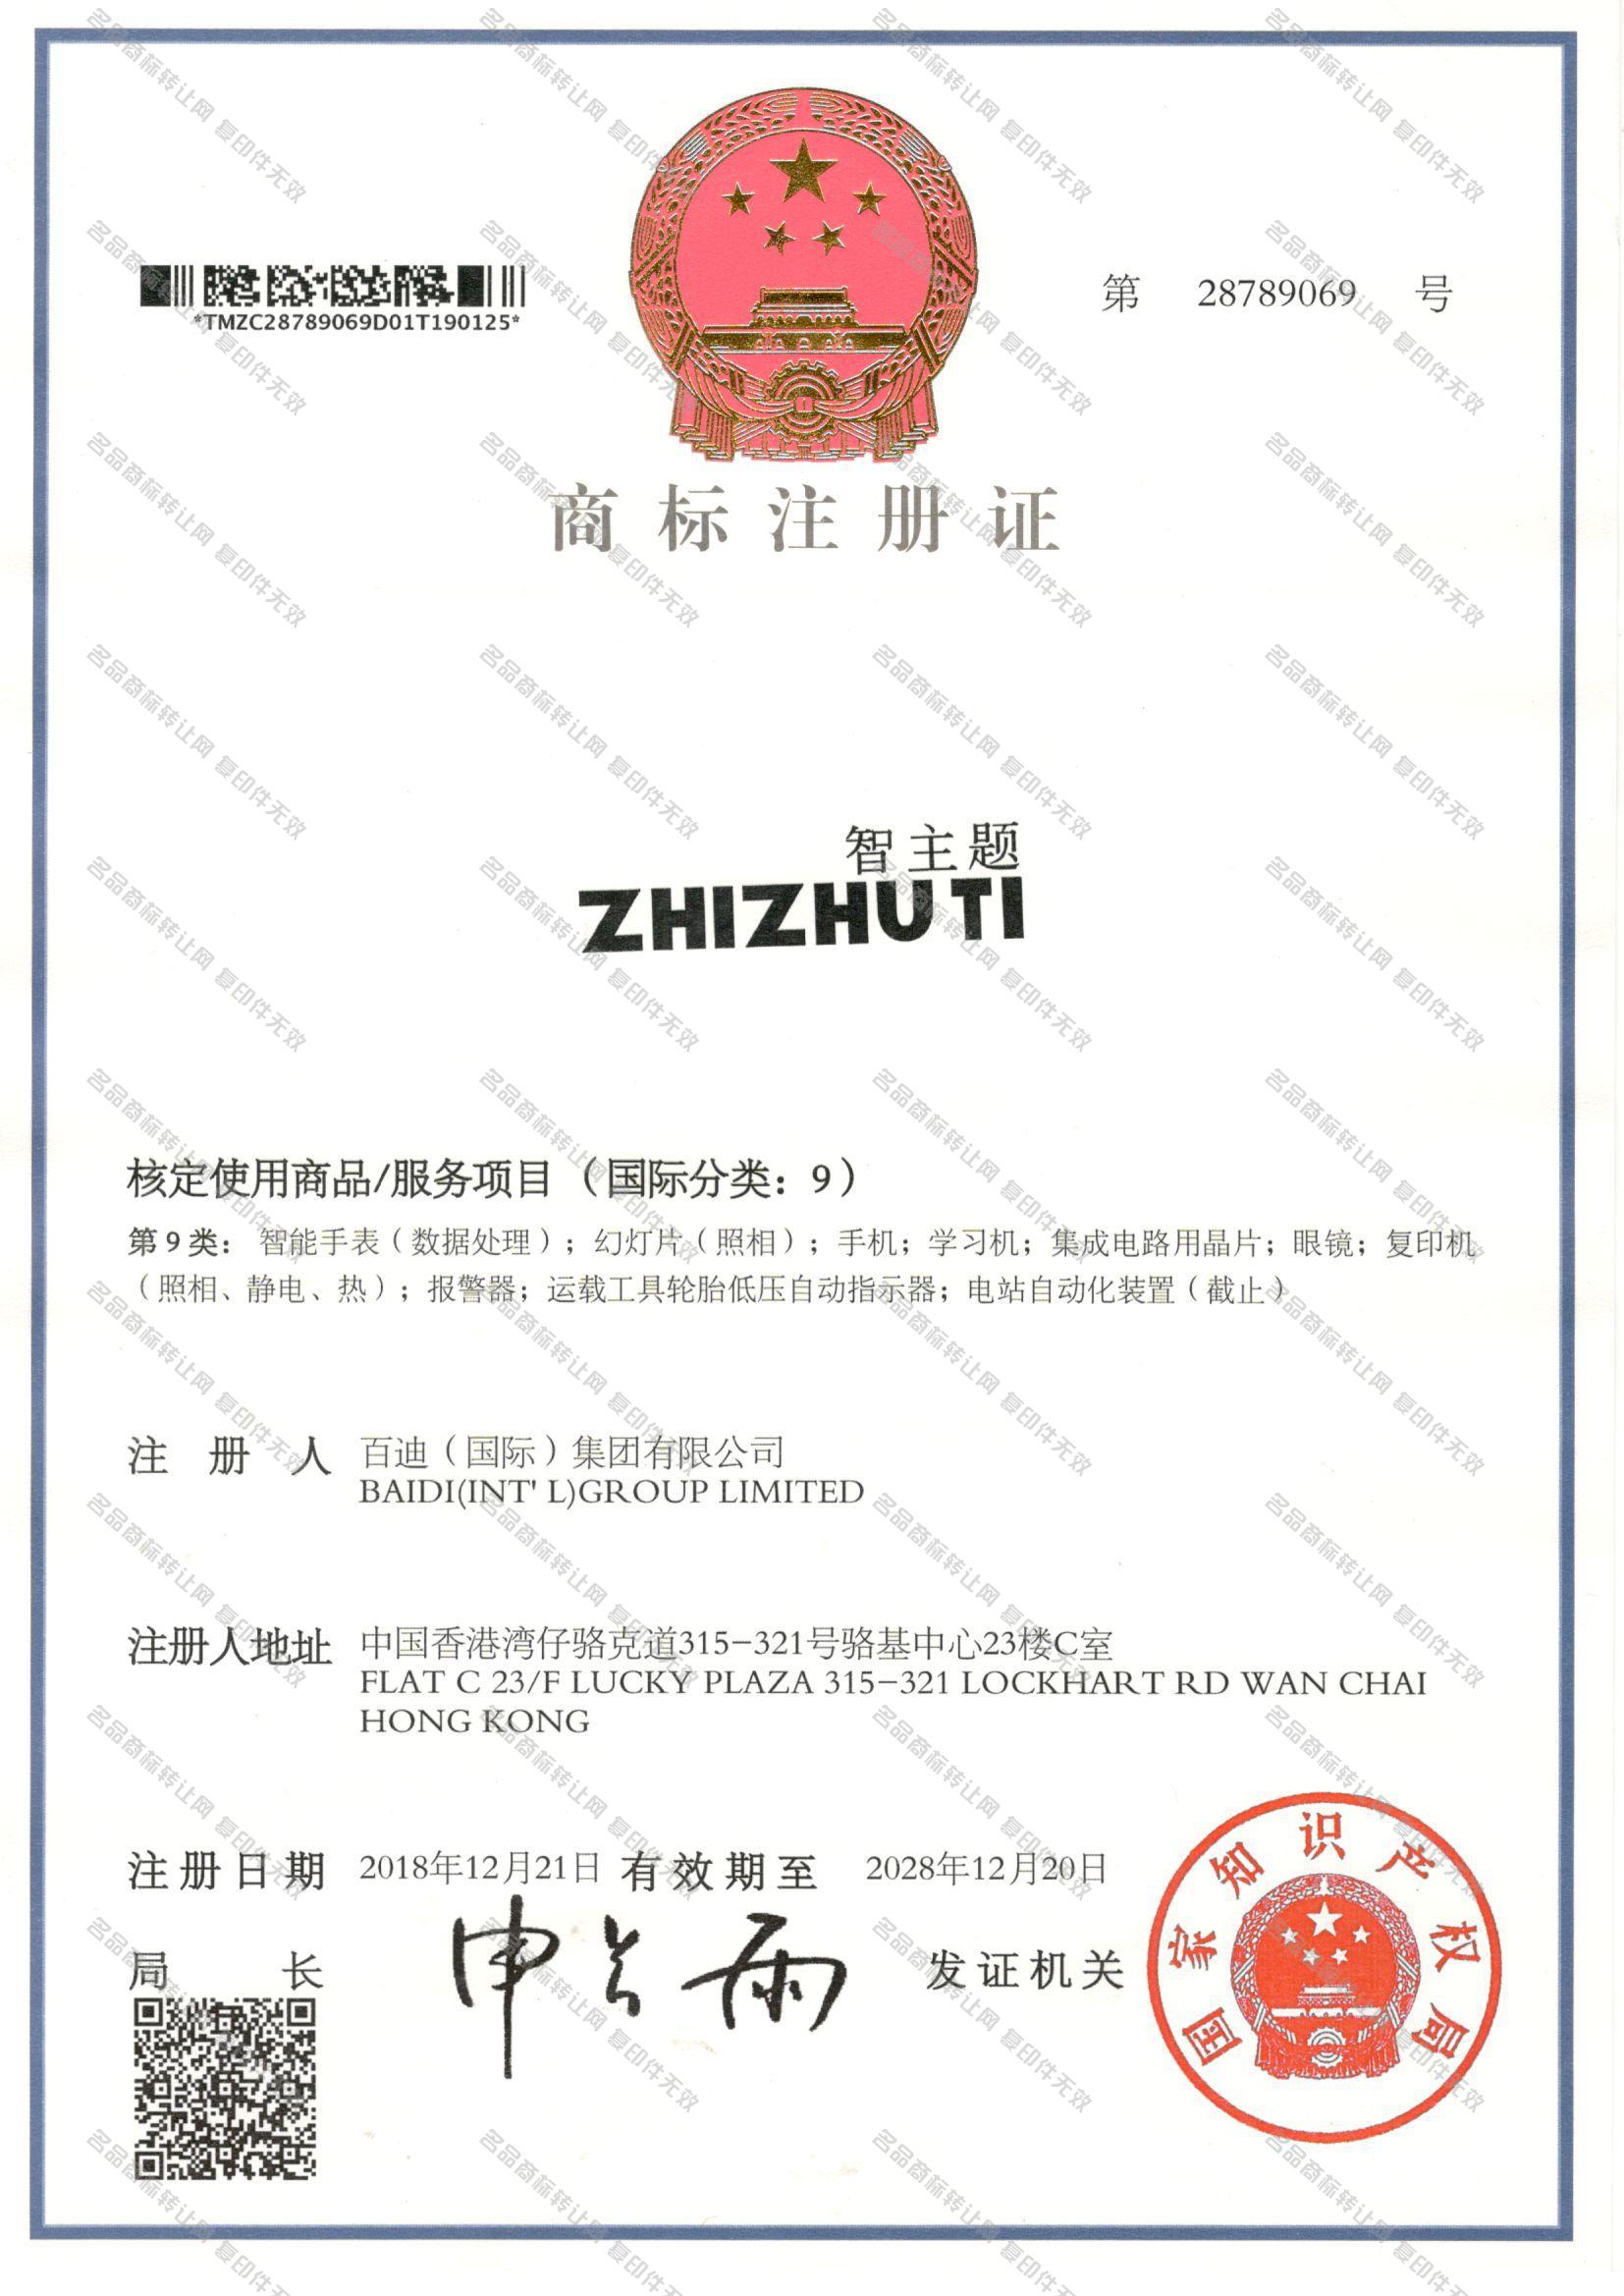 智主题 ZHIZHUTI注册证